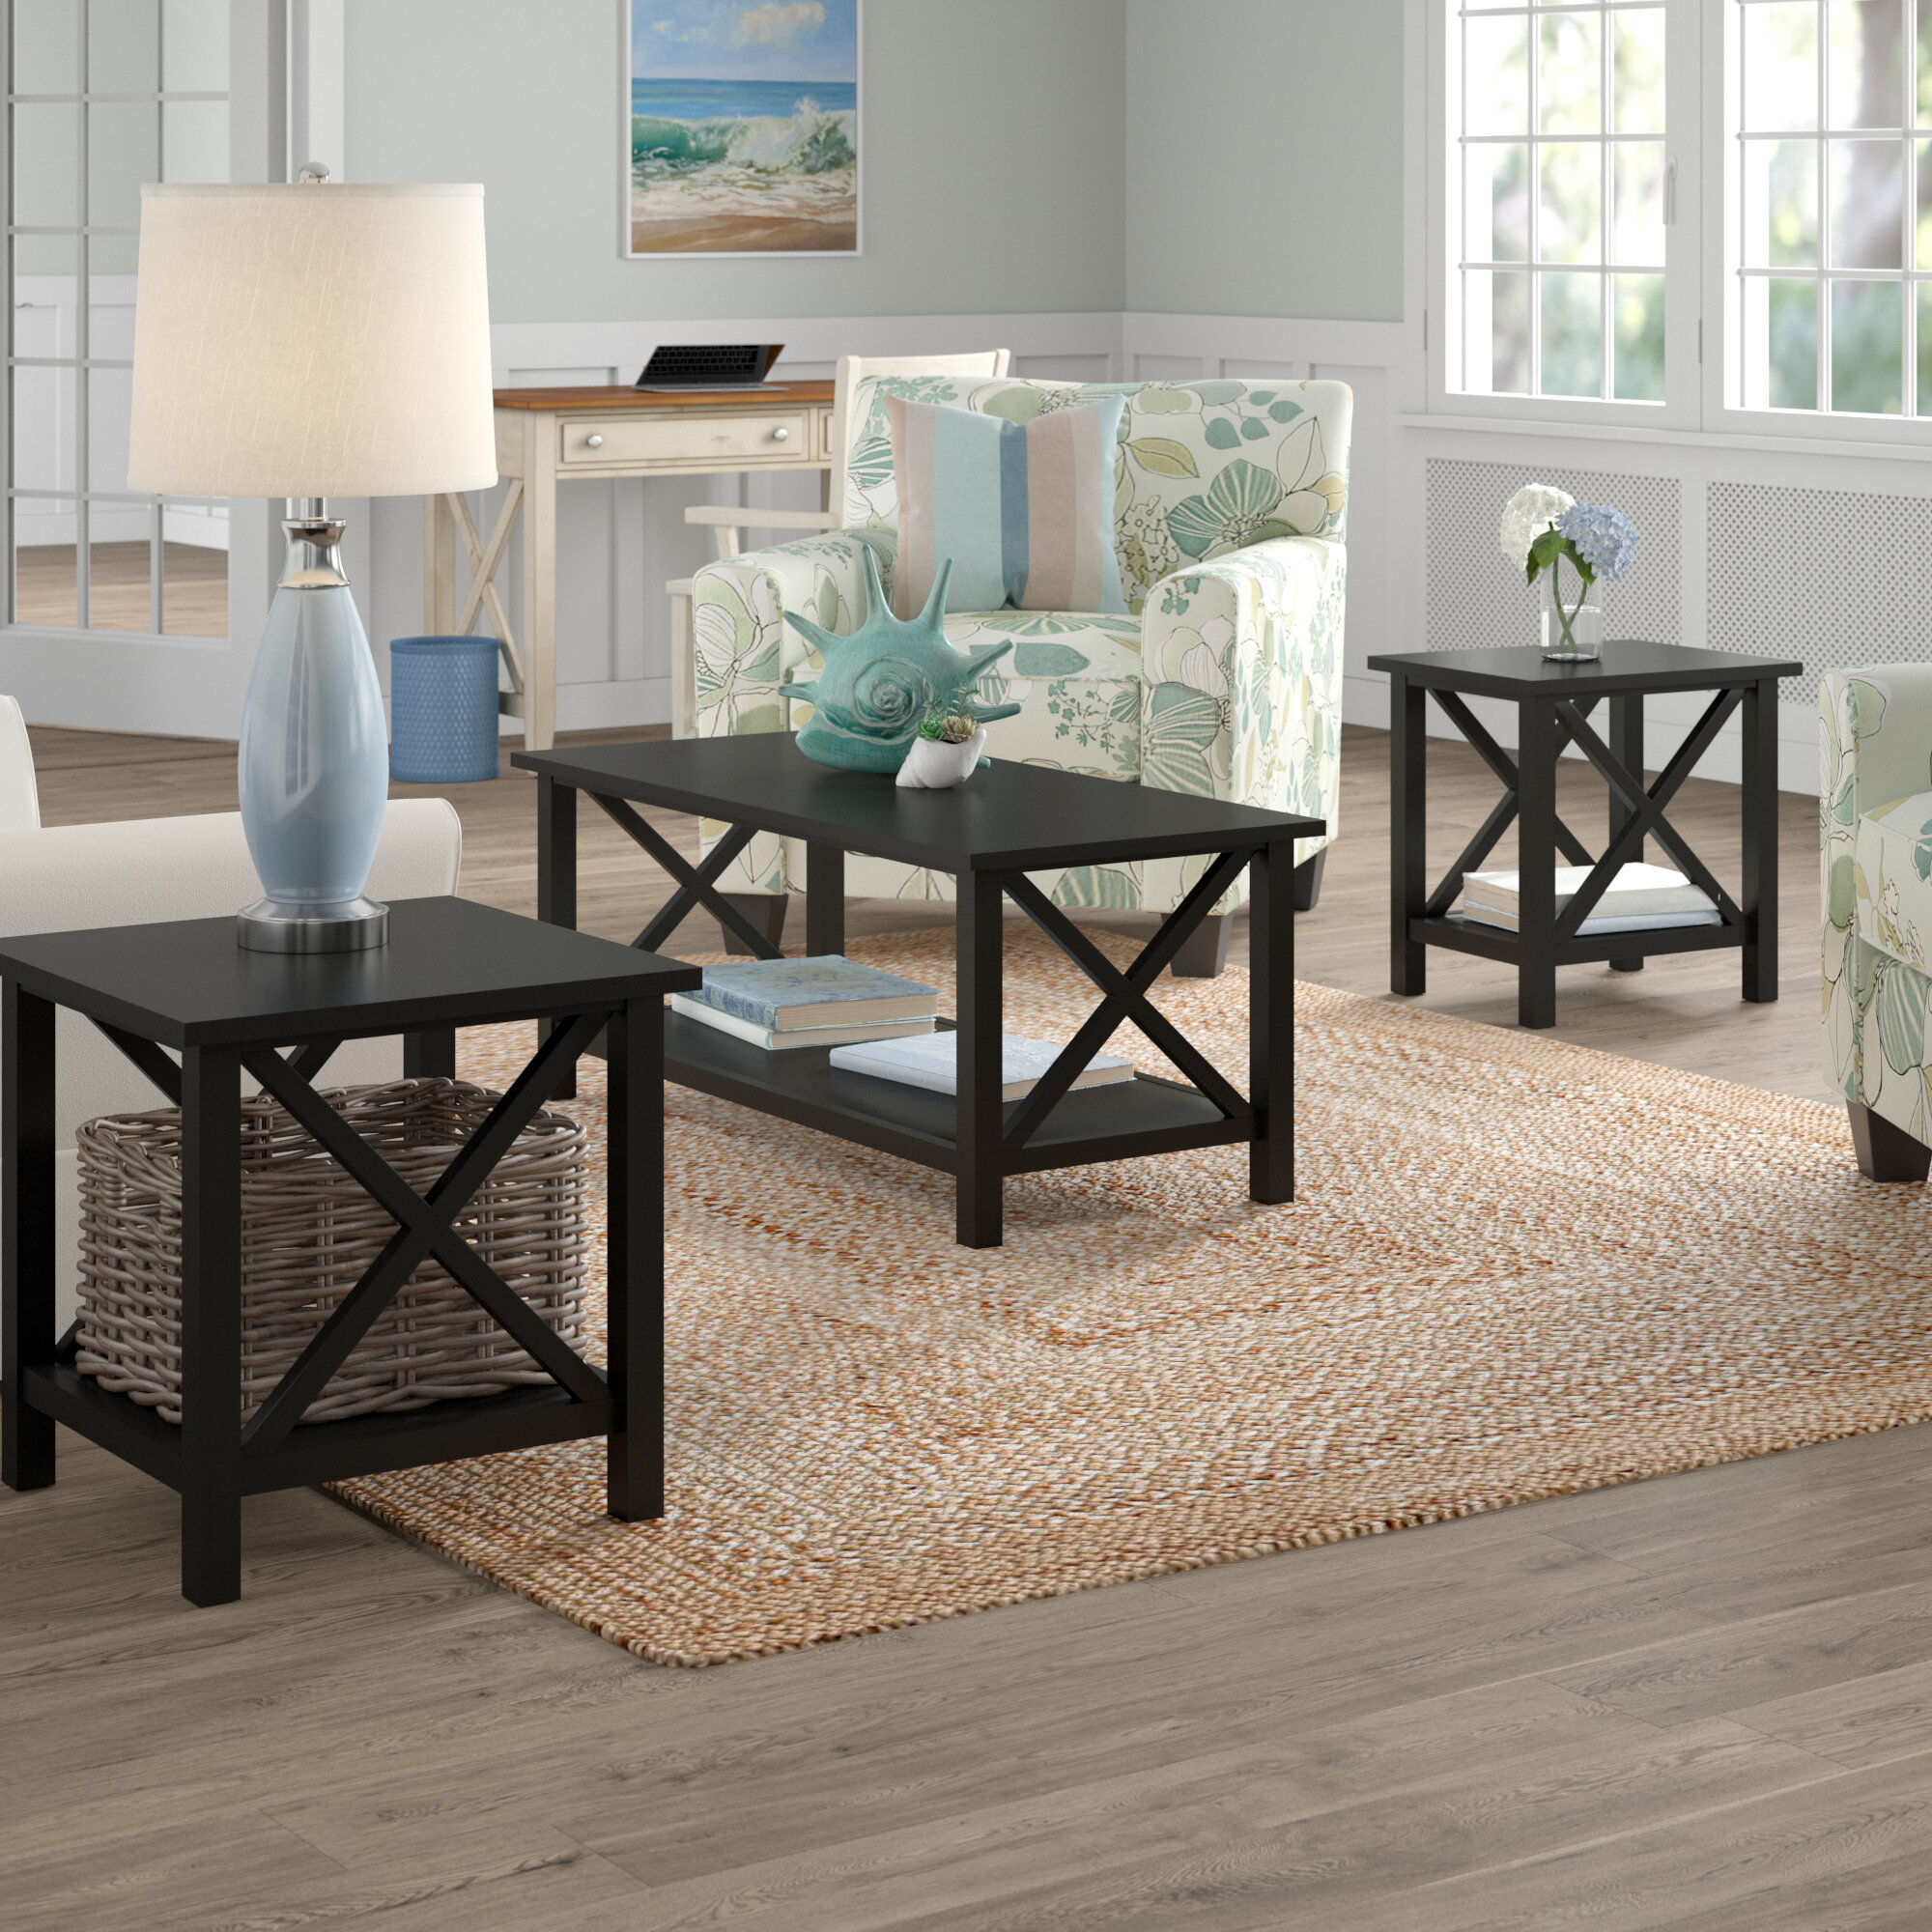 Black Living Room Table Set : Our Best Dining Room Bar Furniture Deals